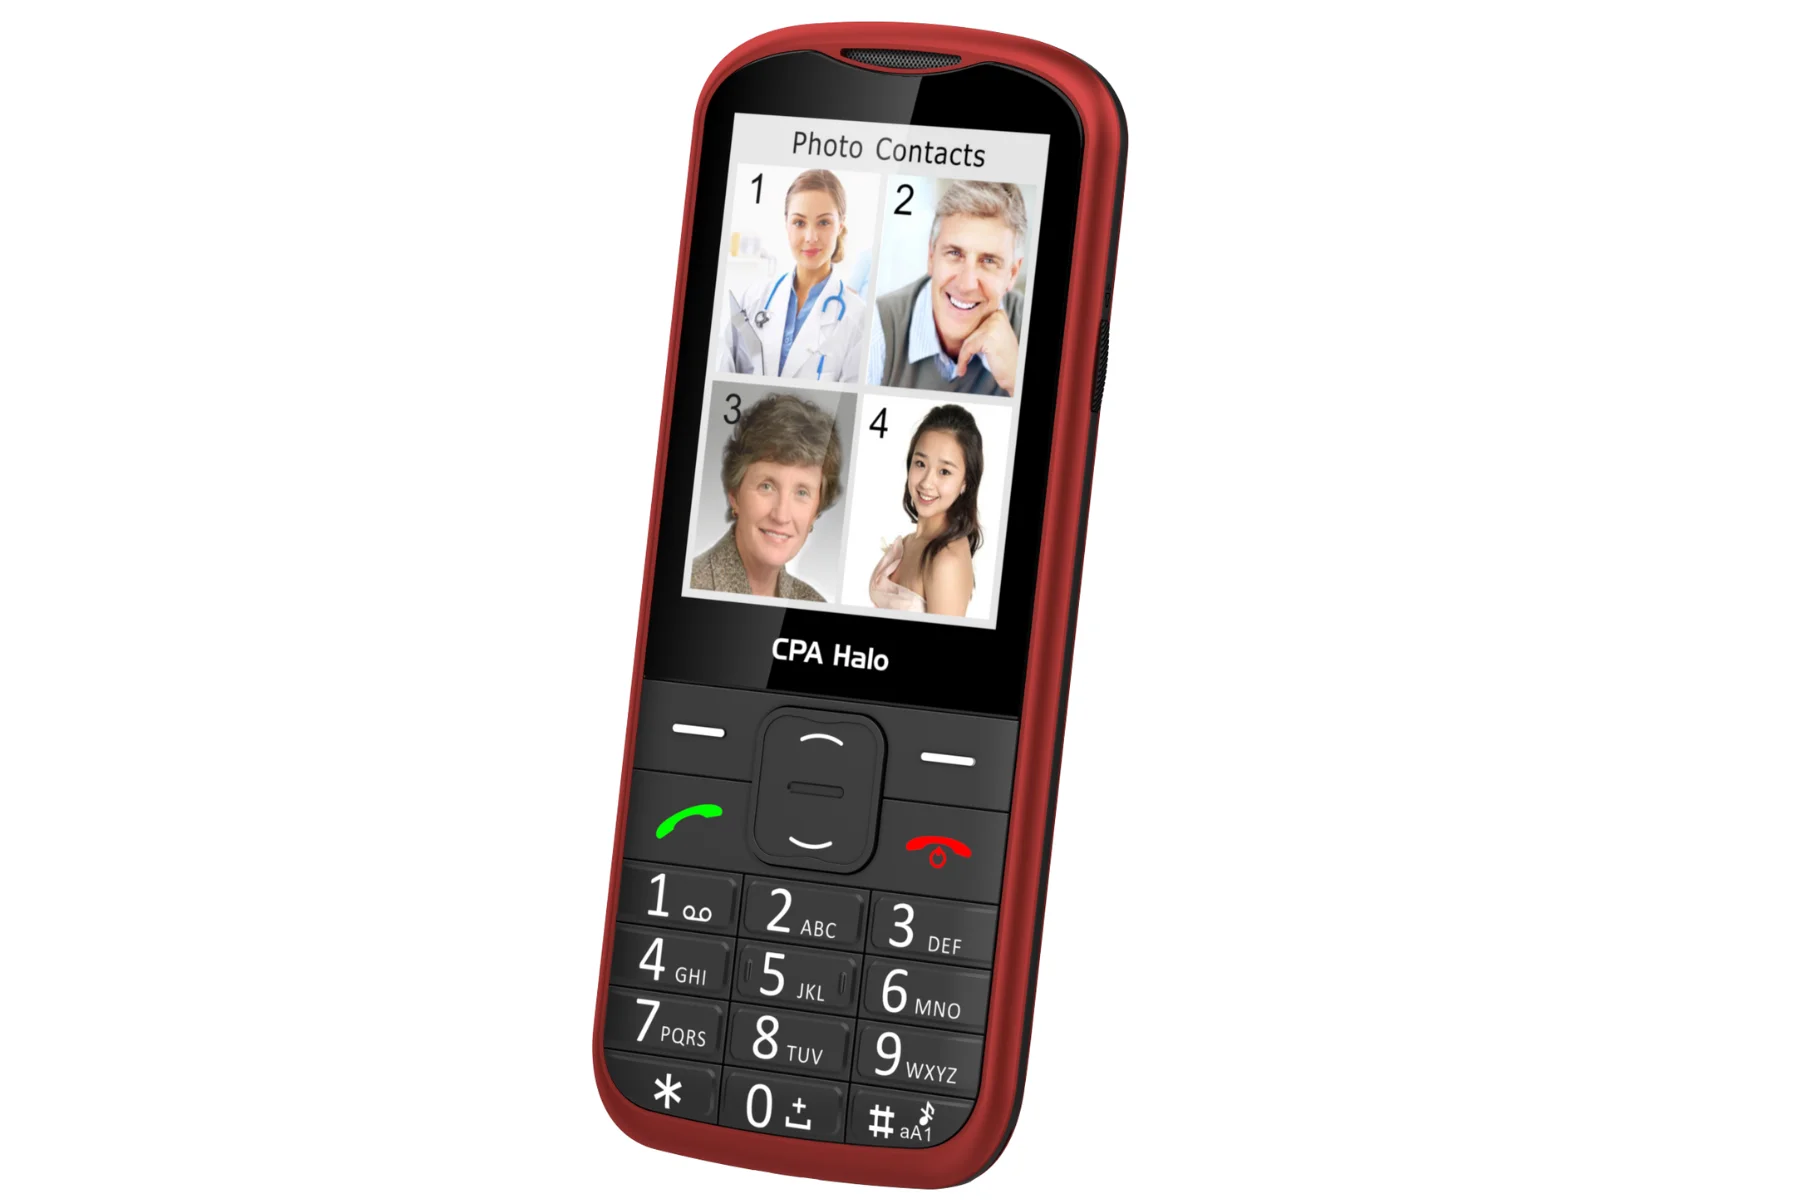 Mobilný telefón CPA Halo 28 Senior red + nab.st foto kontakty